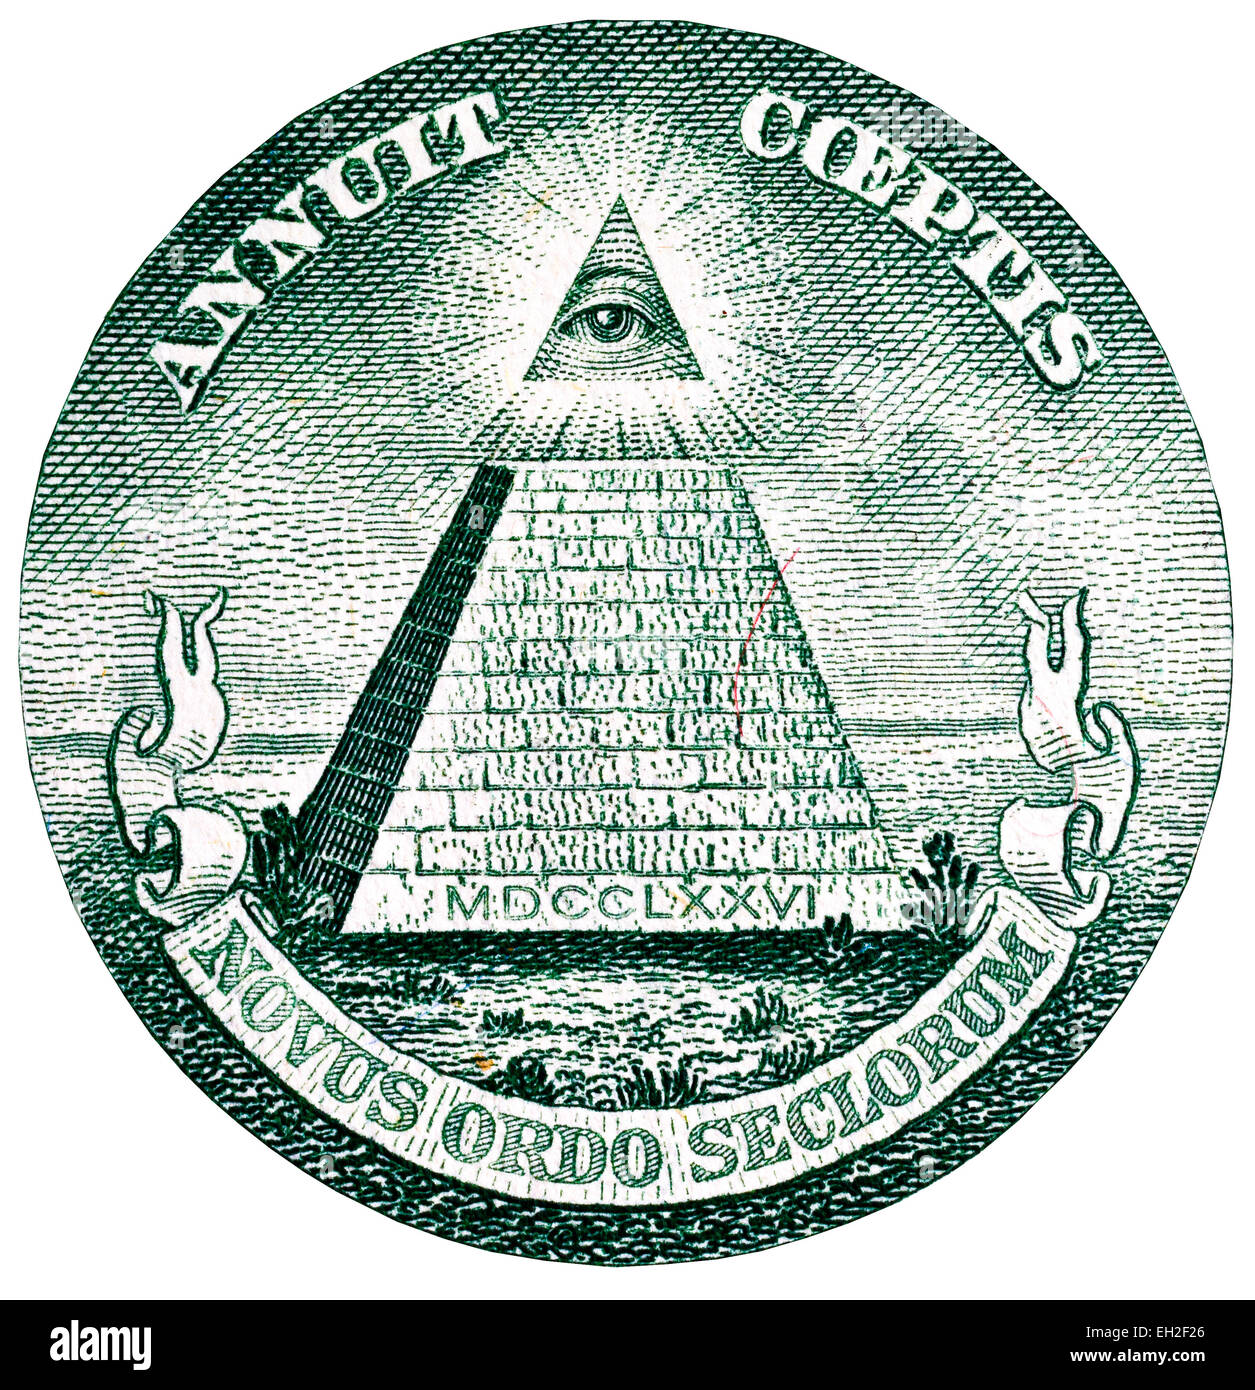 Große Siegel der Vereinigten Staaten, allsehende Auge der Vorsehung und unvollendete Pyramide von 1 Dollar Banknote, USA, 2009 Stockfoto